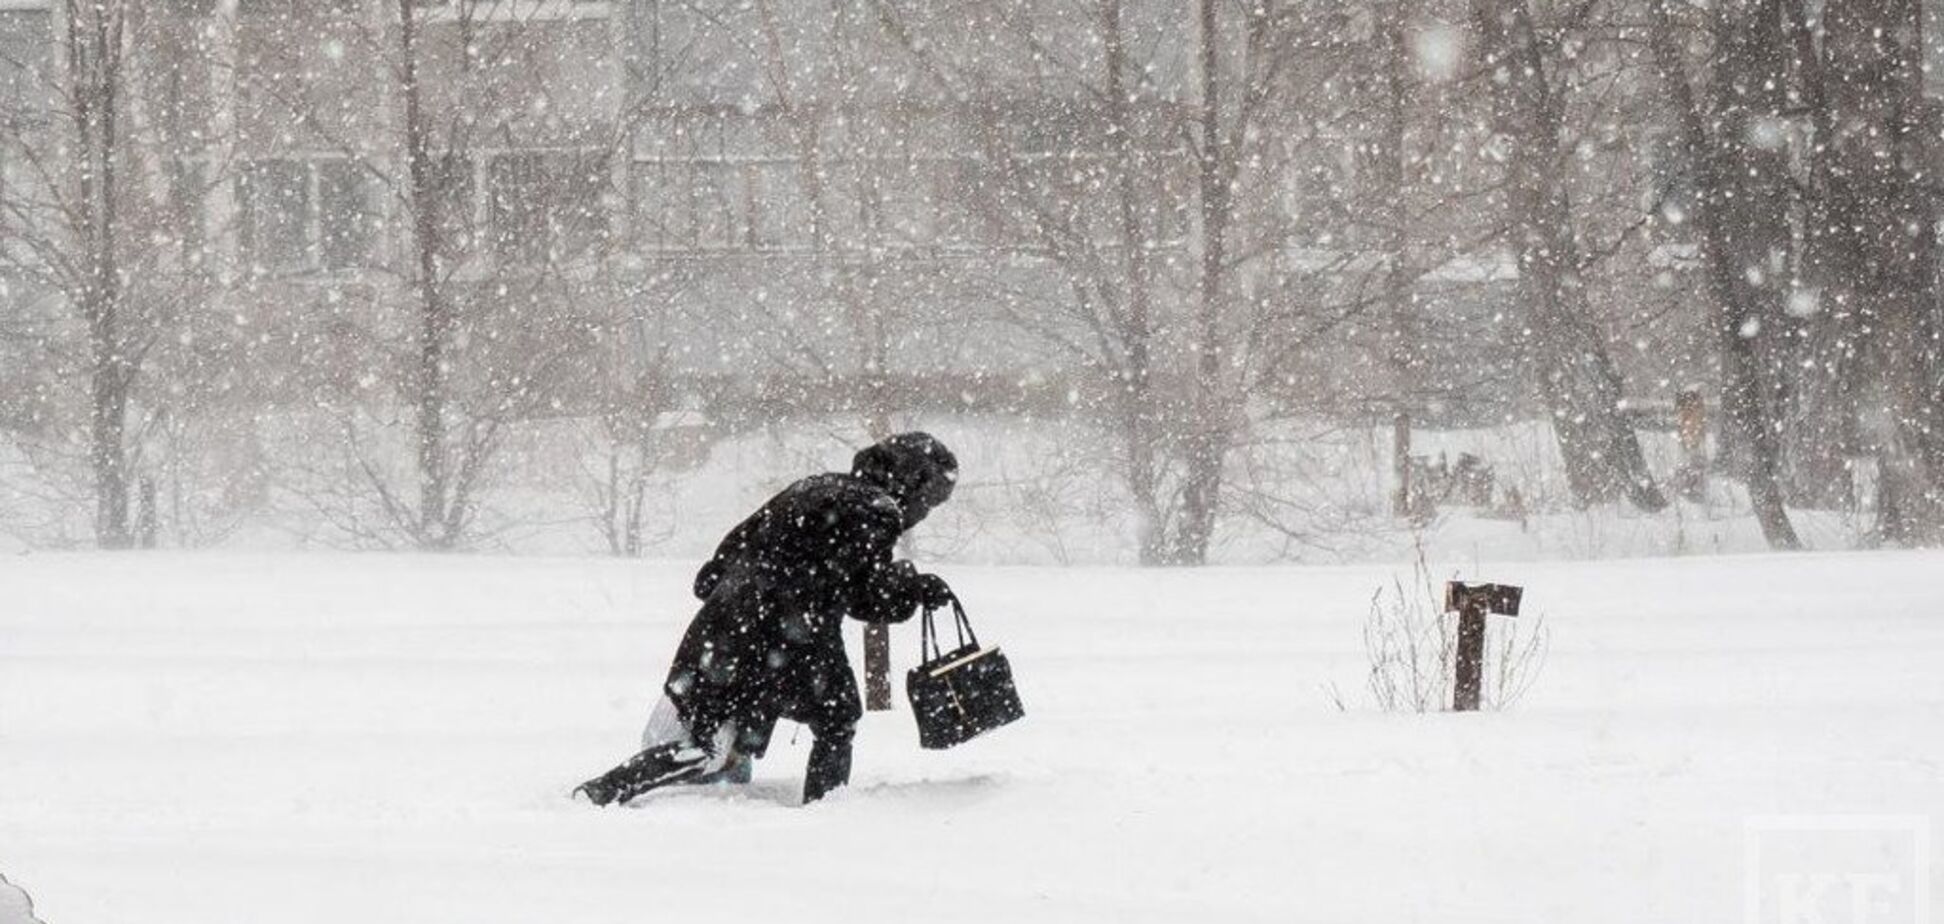 Украину завалит снегом: синоптики уточнили прогноз погоды